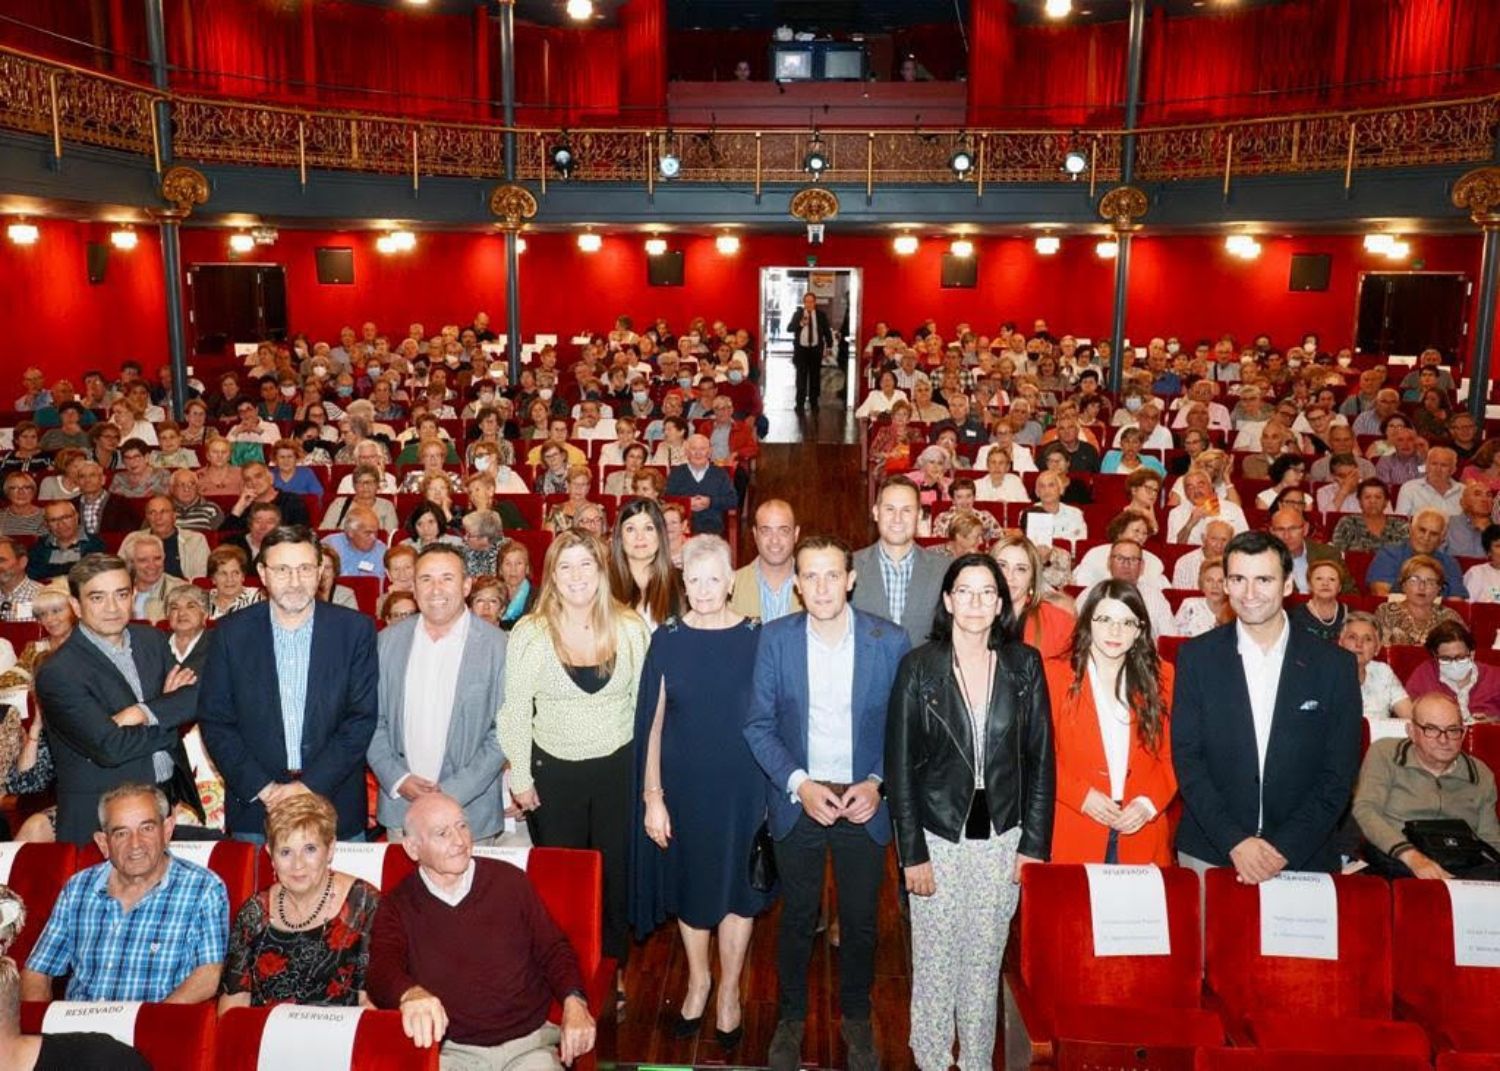 La Diputación de Valladolid homenajea a los mayores promoviendo una sociedad "para todas las edades". Foto: Diputación de Valladolid